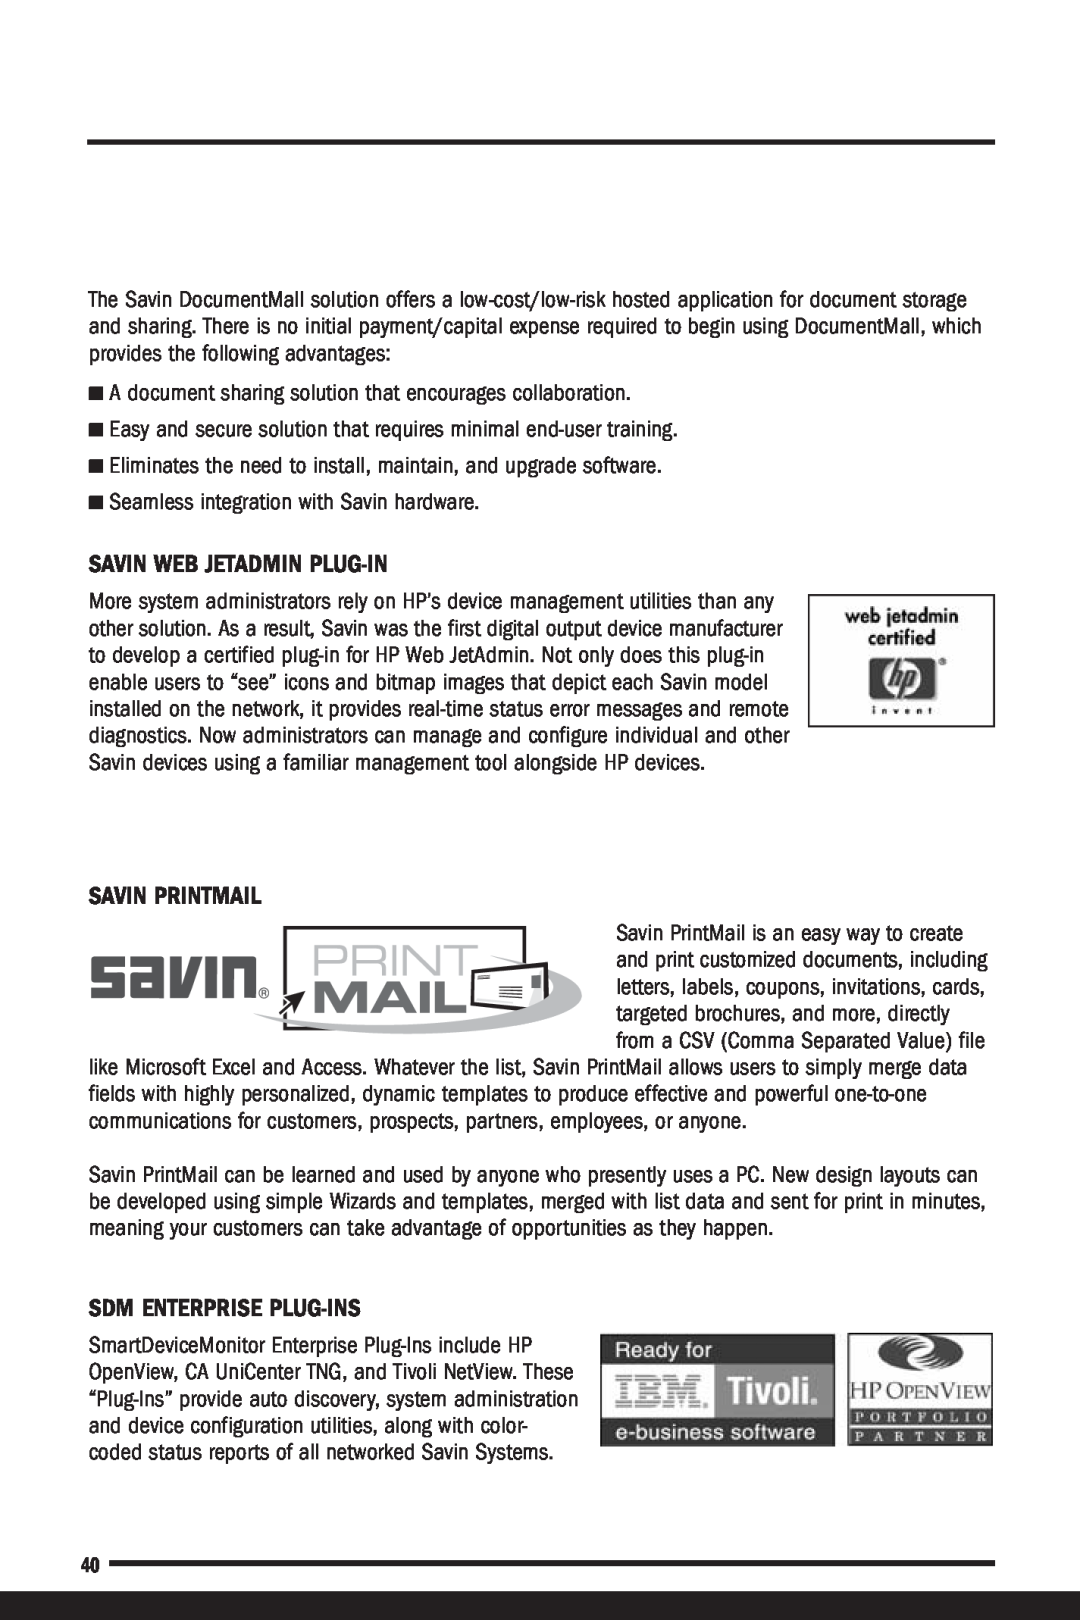 Savin C7570 Savin Web Jetadmin Plug-In, Savin Printmail, Sdm Enterprise Plug-Ins, Seamless integration with Savin hardware 